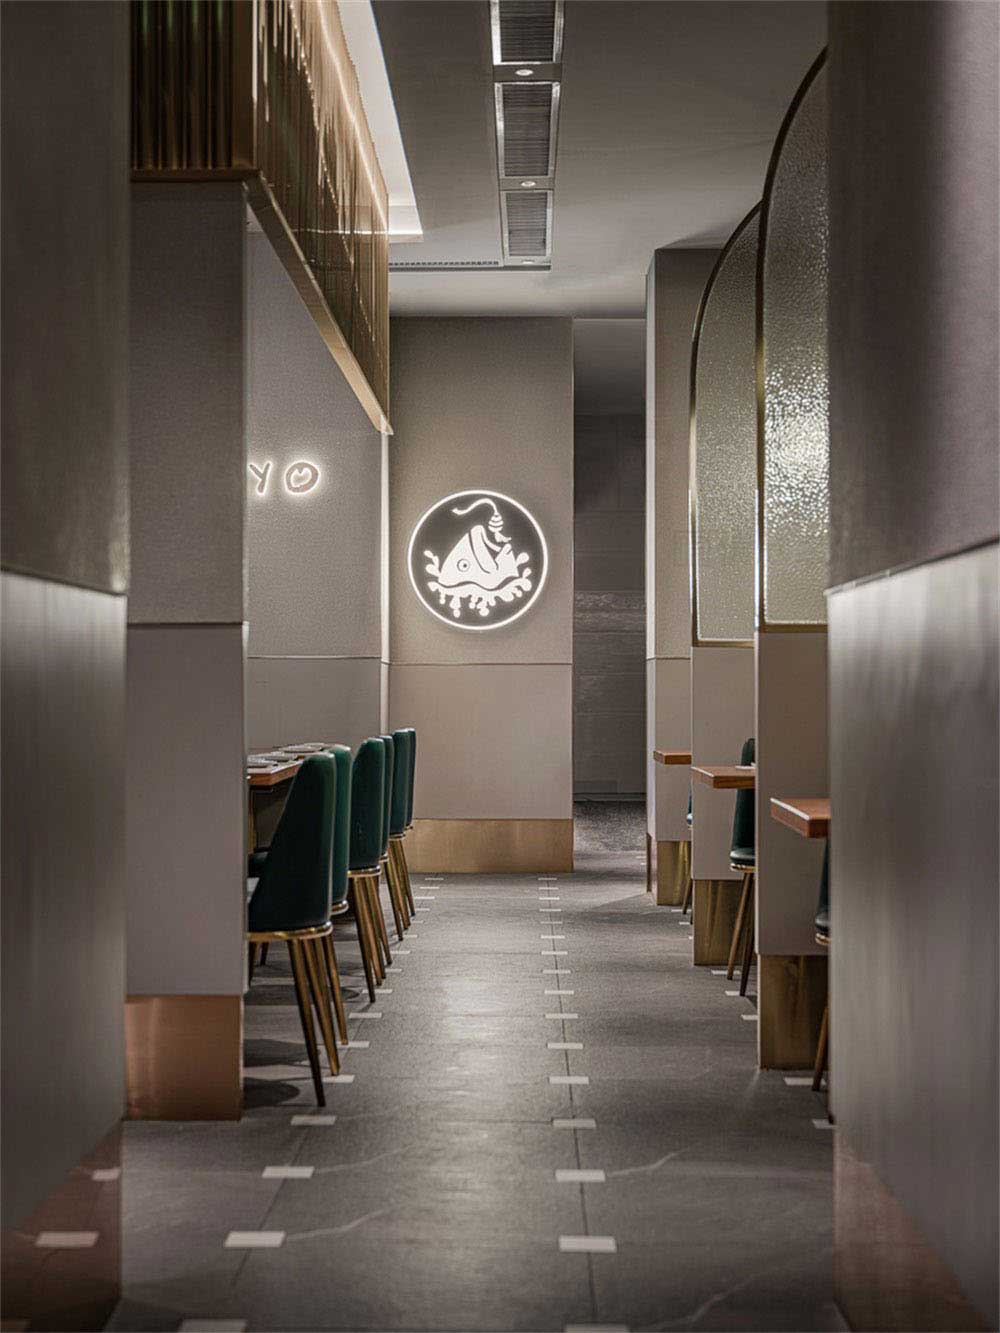 深圳宝安轻奢风格铁板烧餐厅装修设计墙面装饰